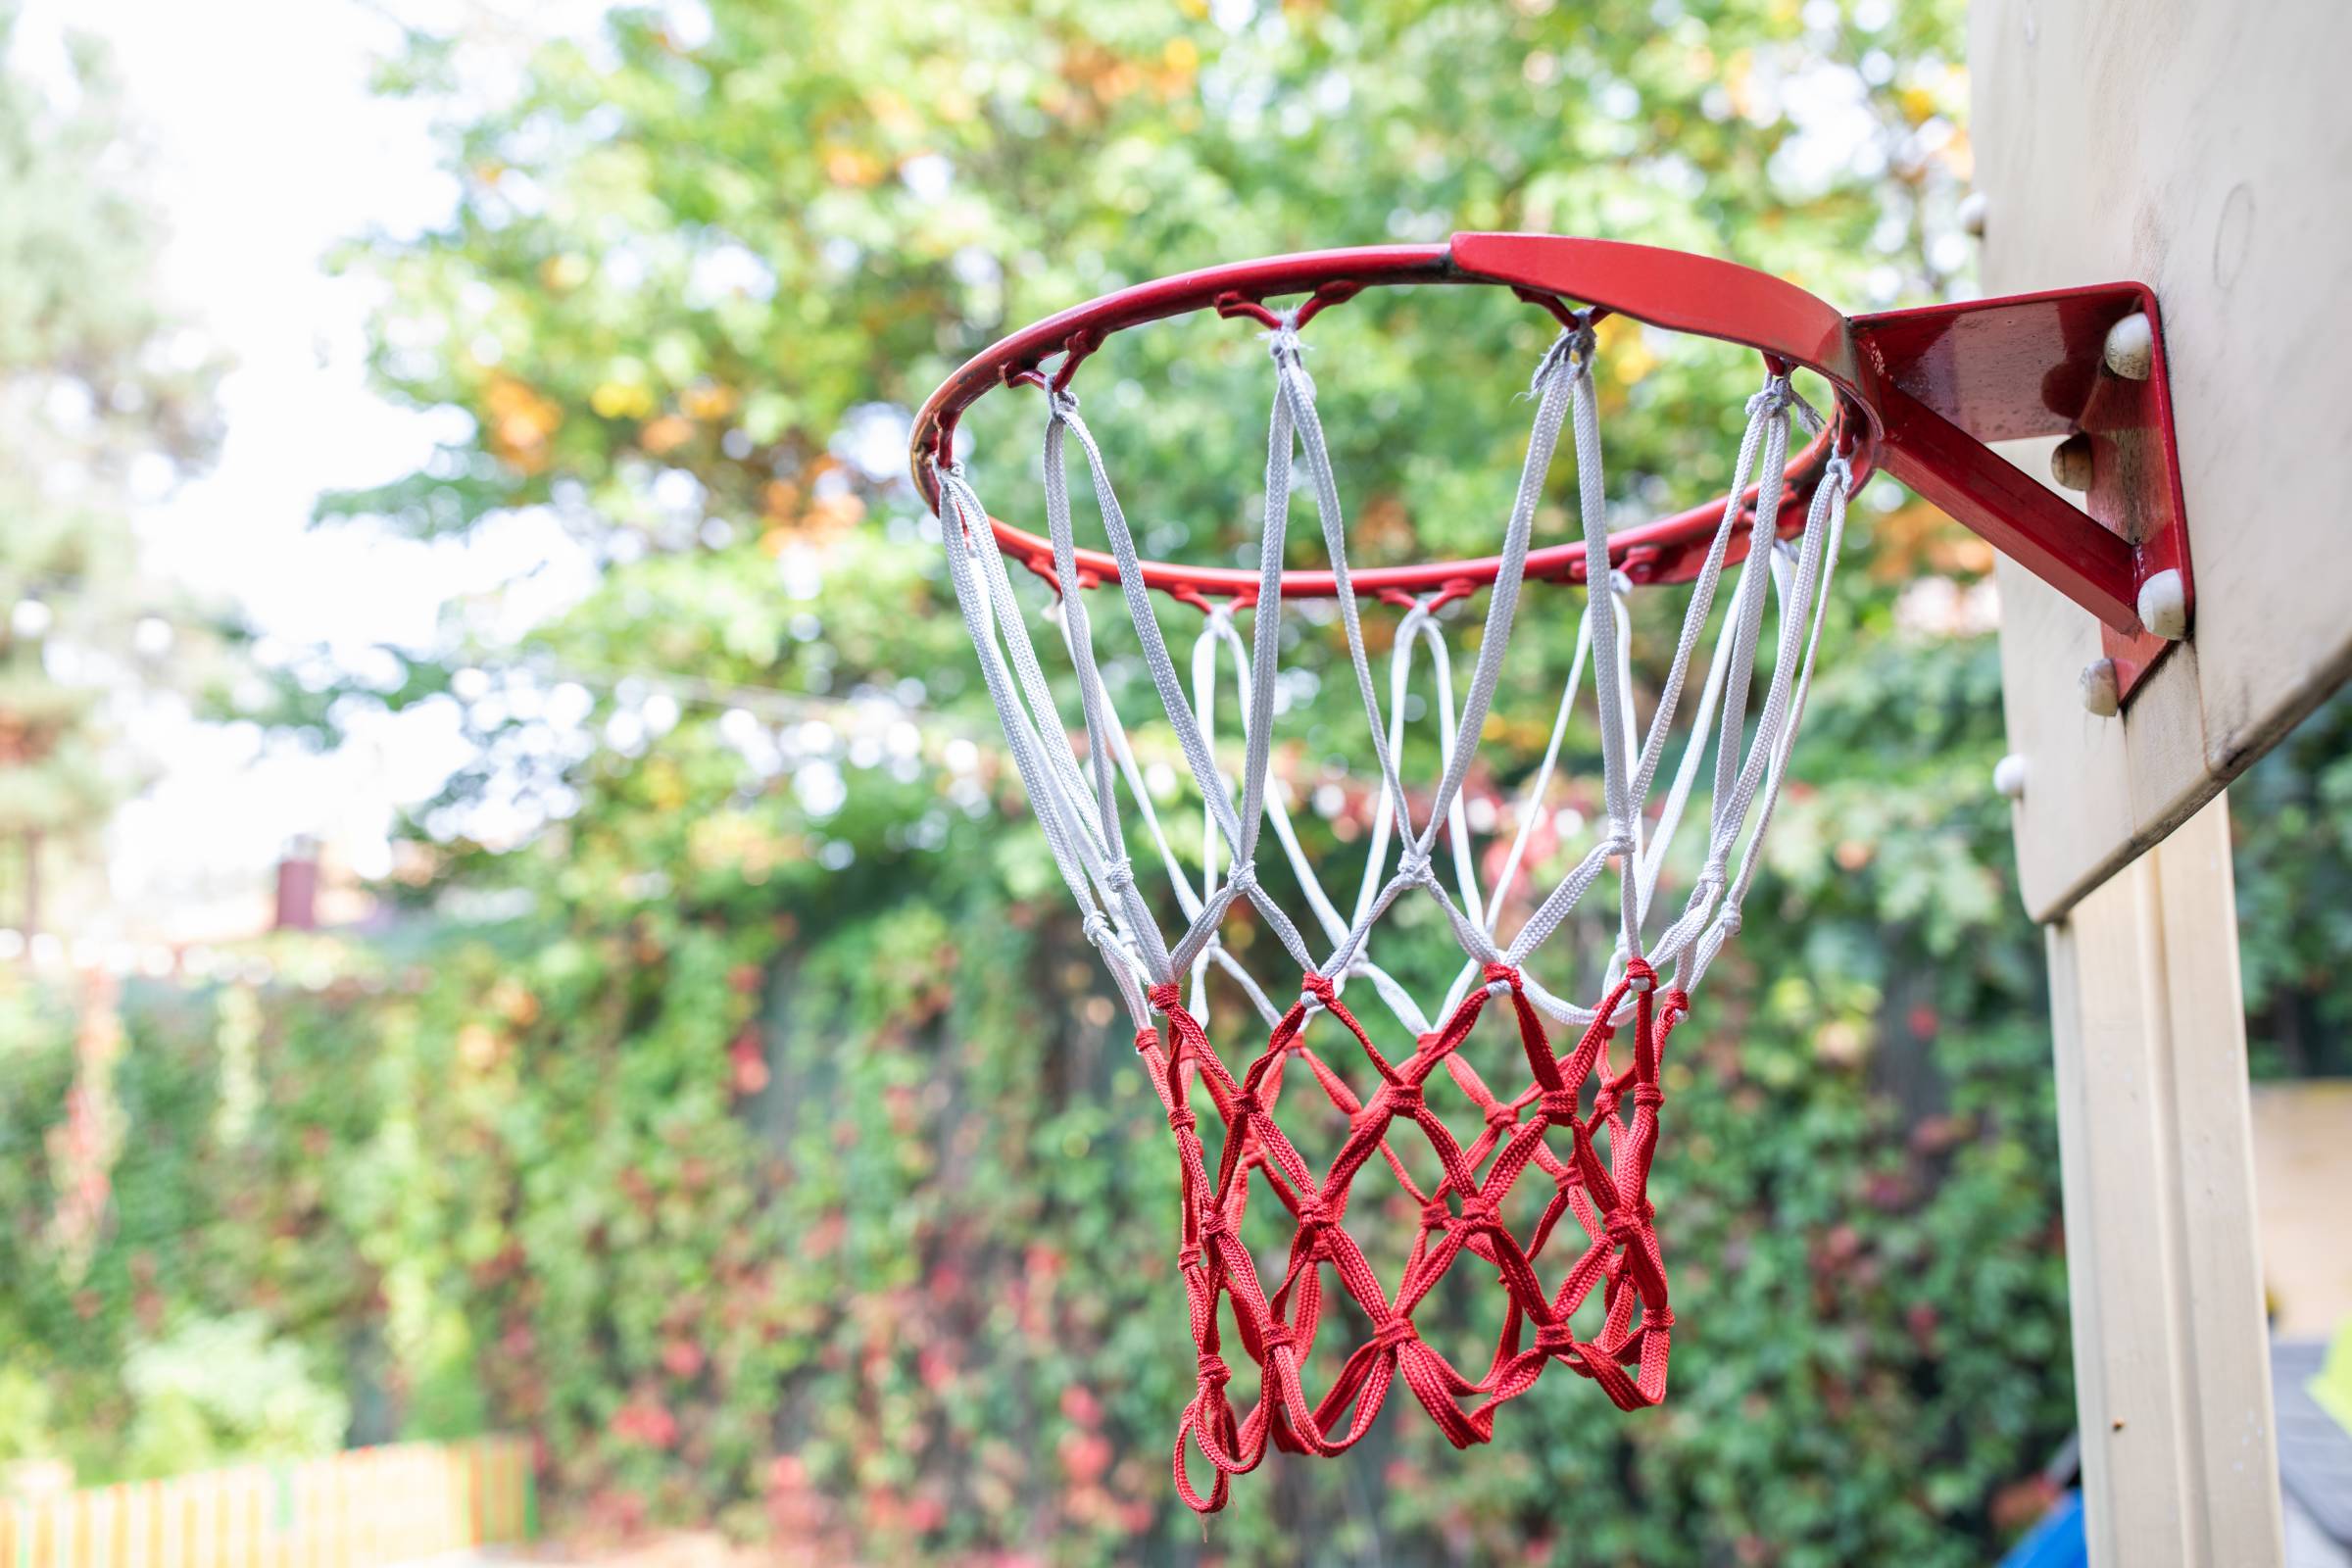 a newly assembled basketball hoop